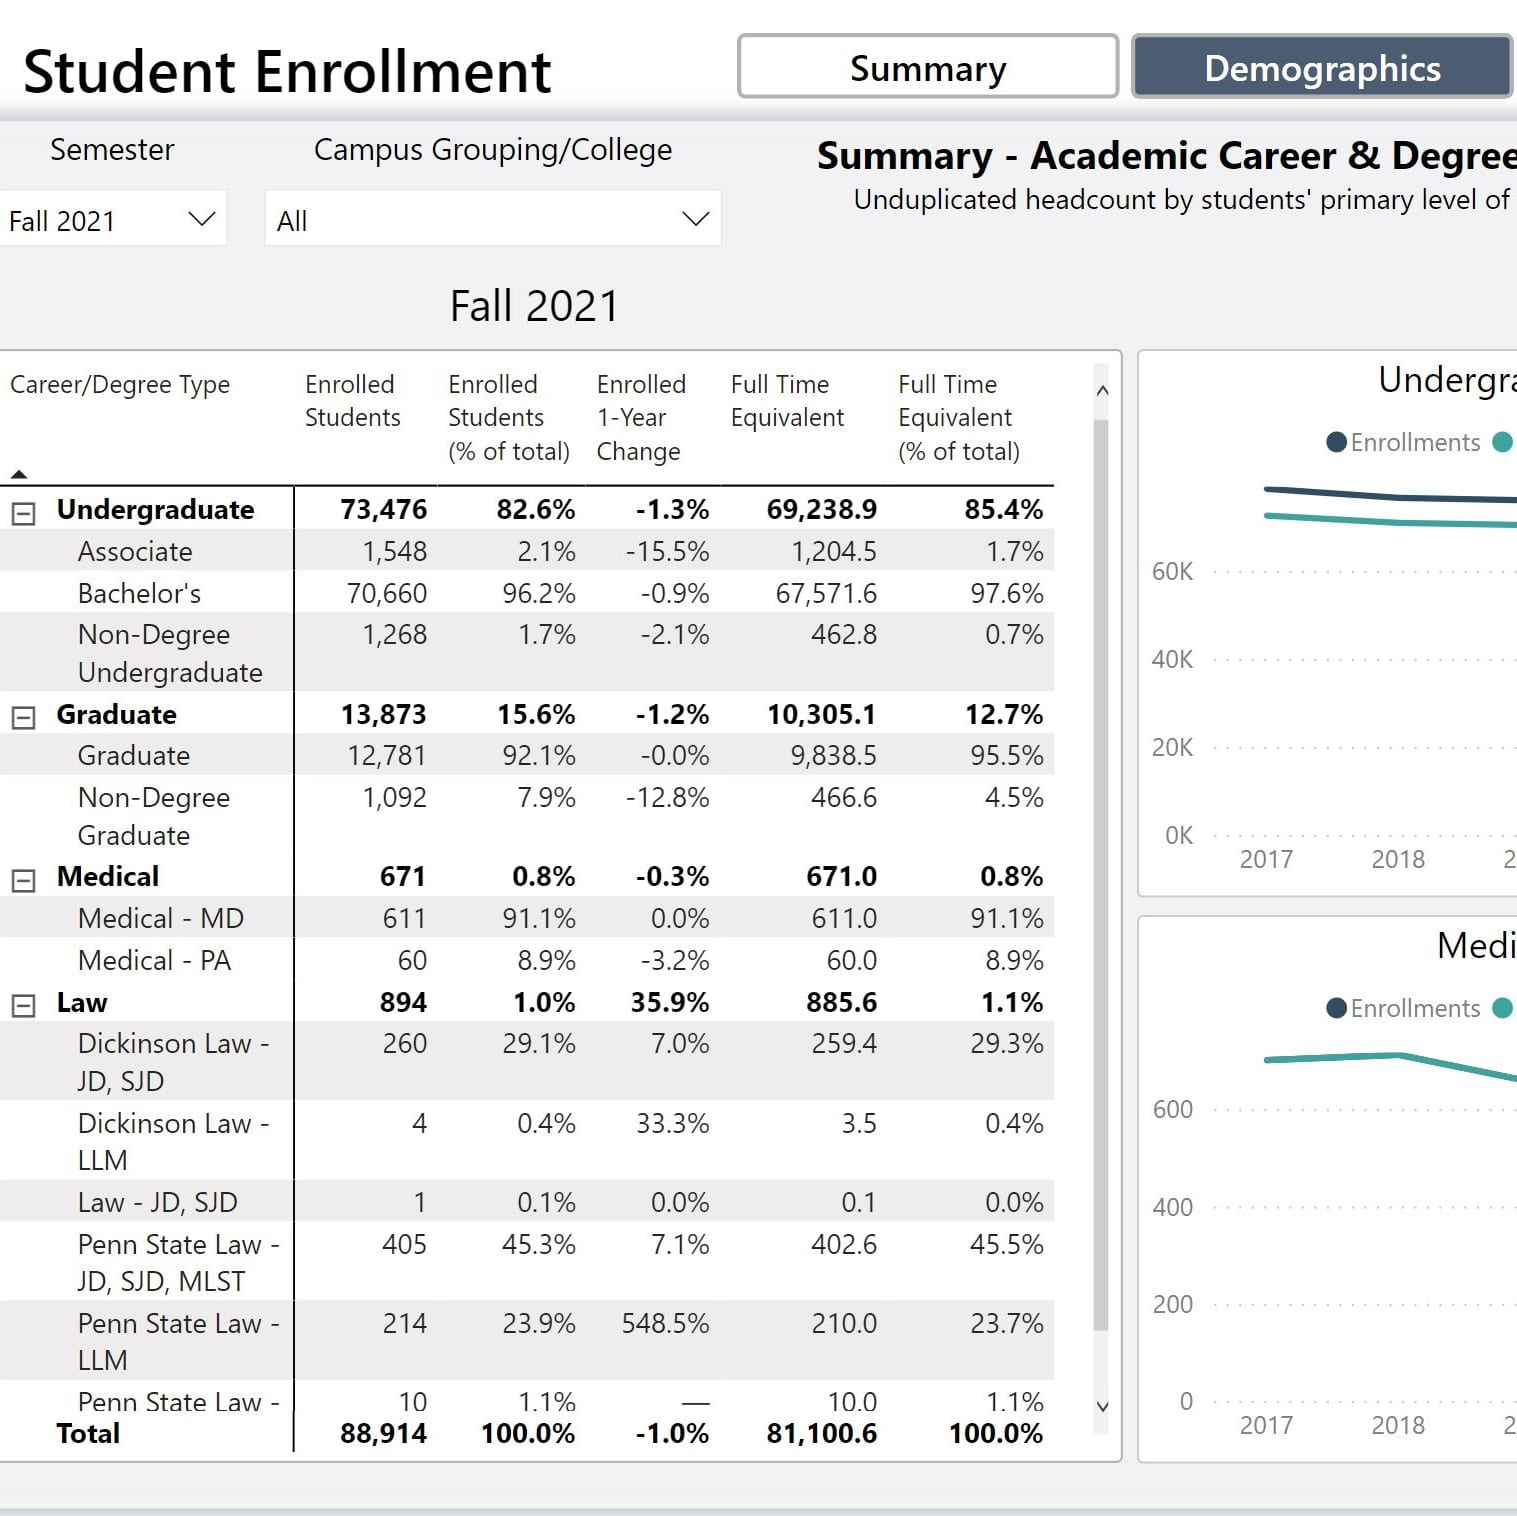 Student Enrollment Dashboard Image